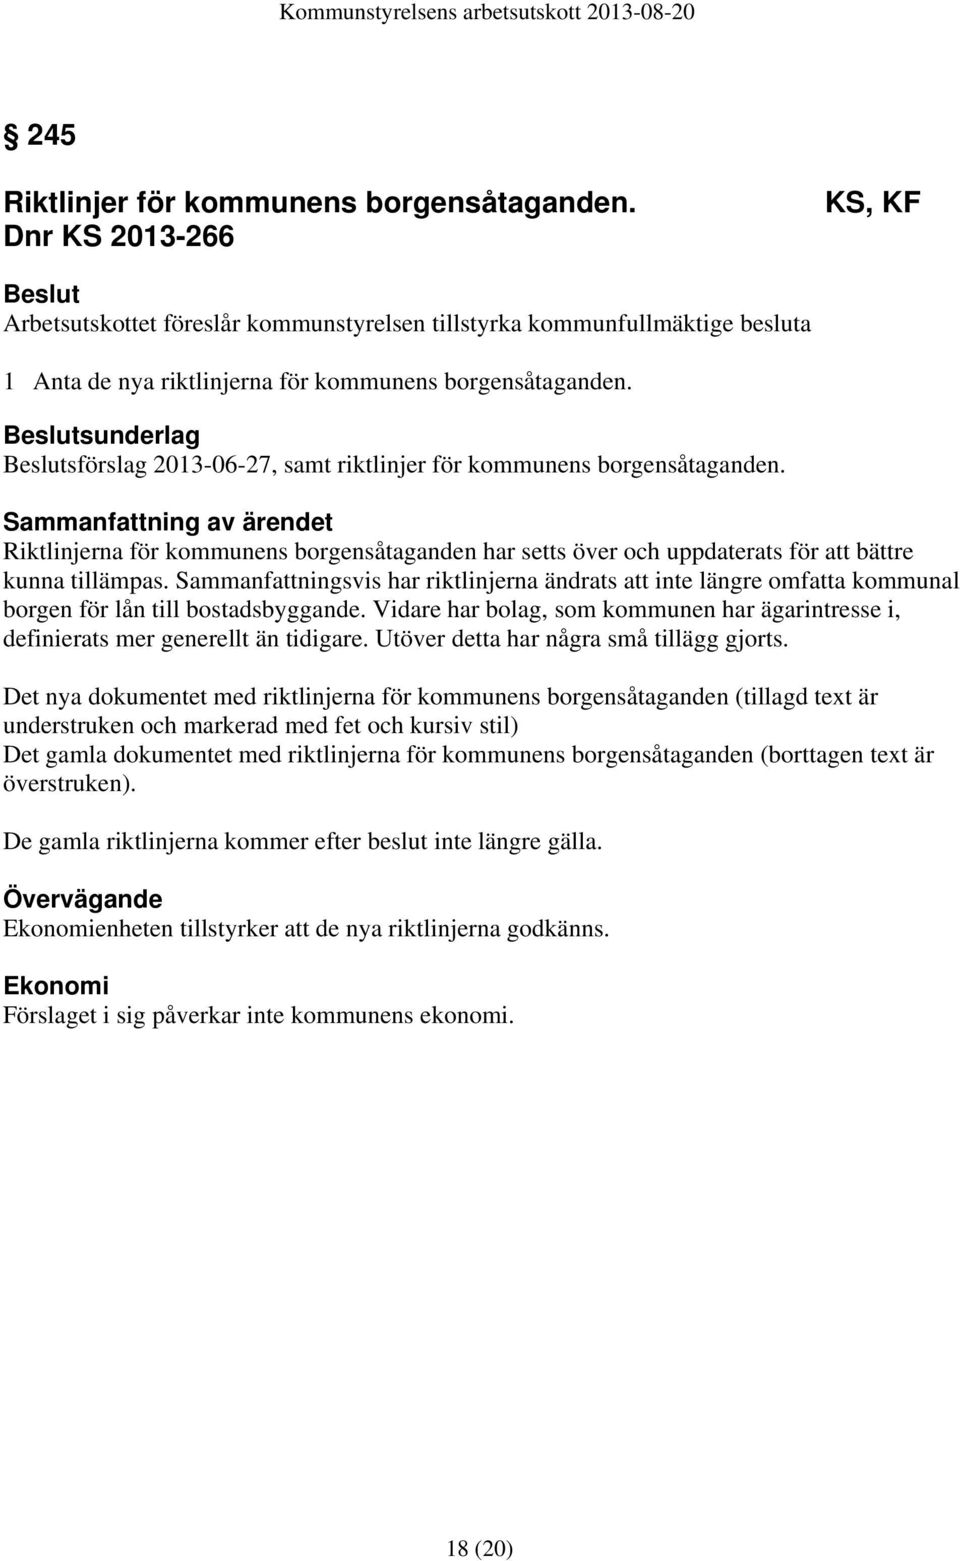 sunderlag sförslag 2013-06-27, samt riktlinjer för kommunens borgensåtaganden.